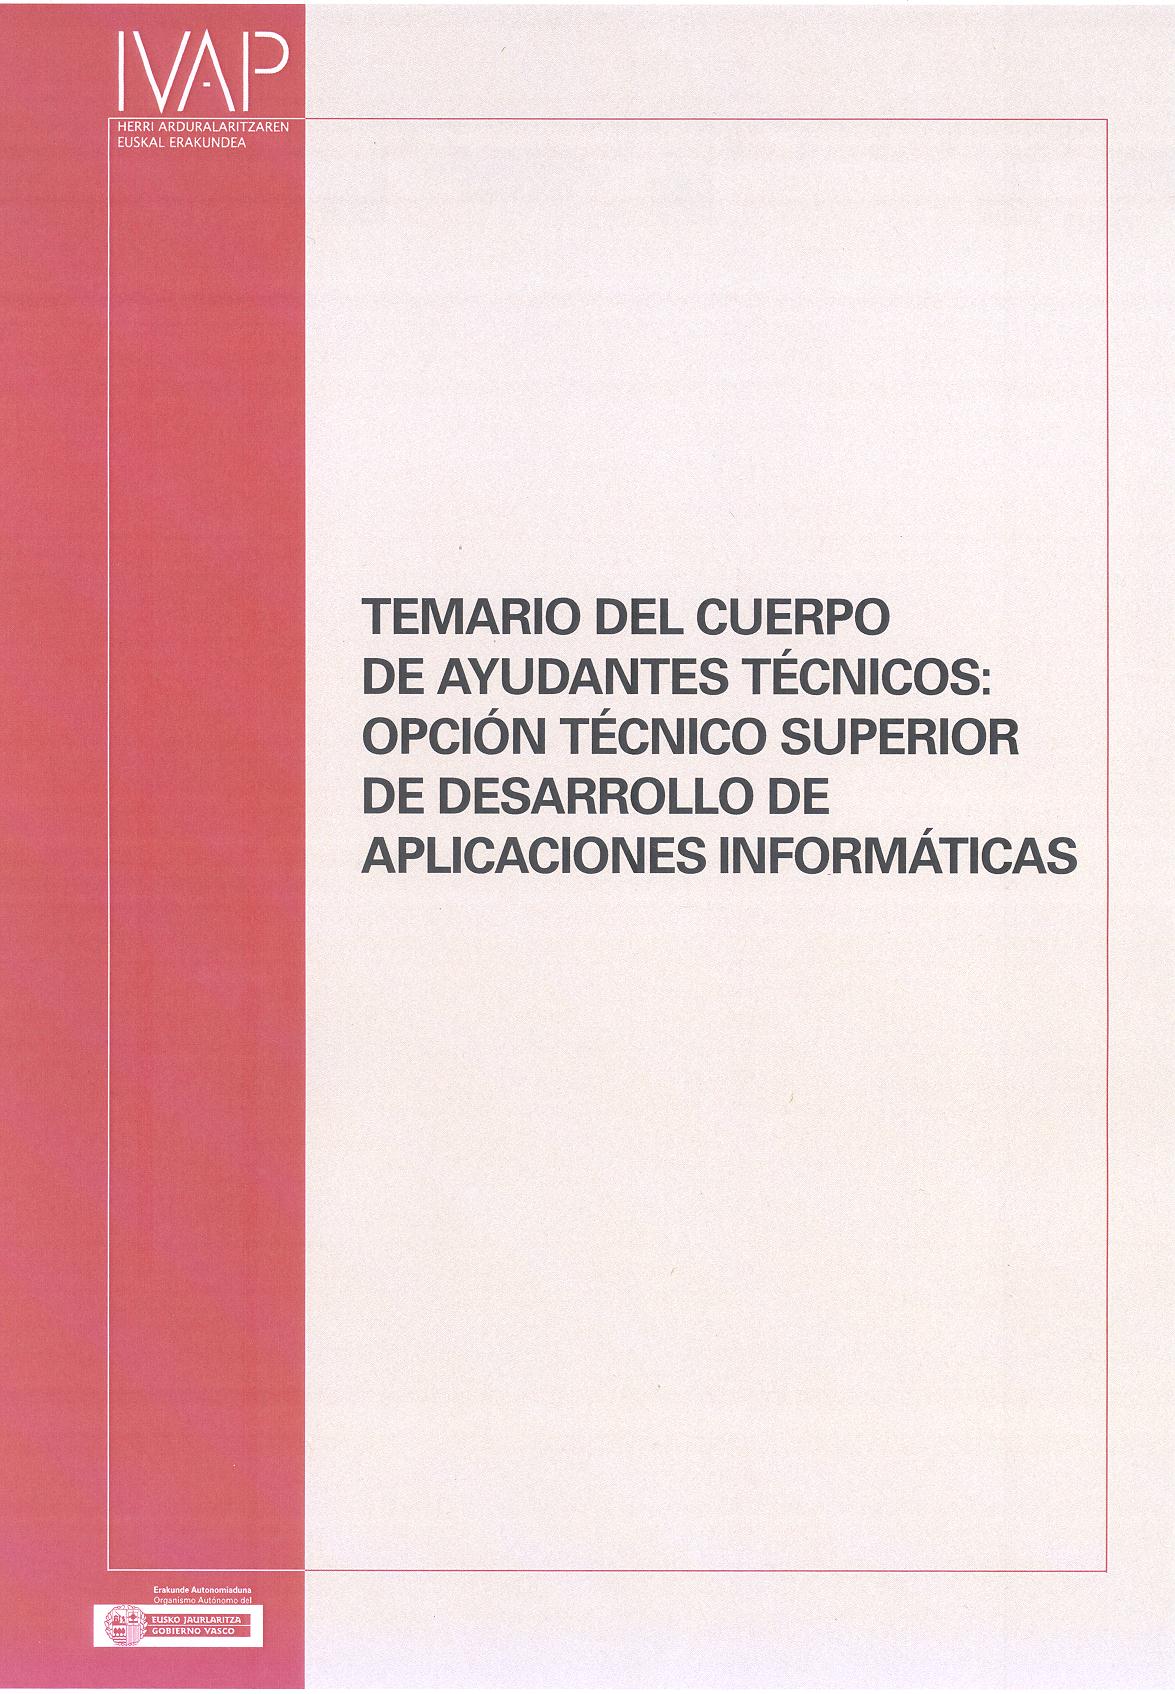 Temario del Cuerpo de Ayudantes Técnicos: Opción Técnico Superior de desarrollo de aplicaciones informáticas